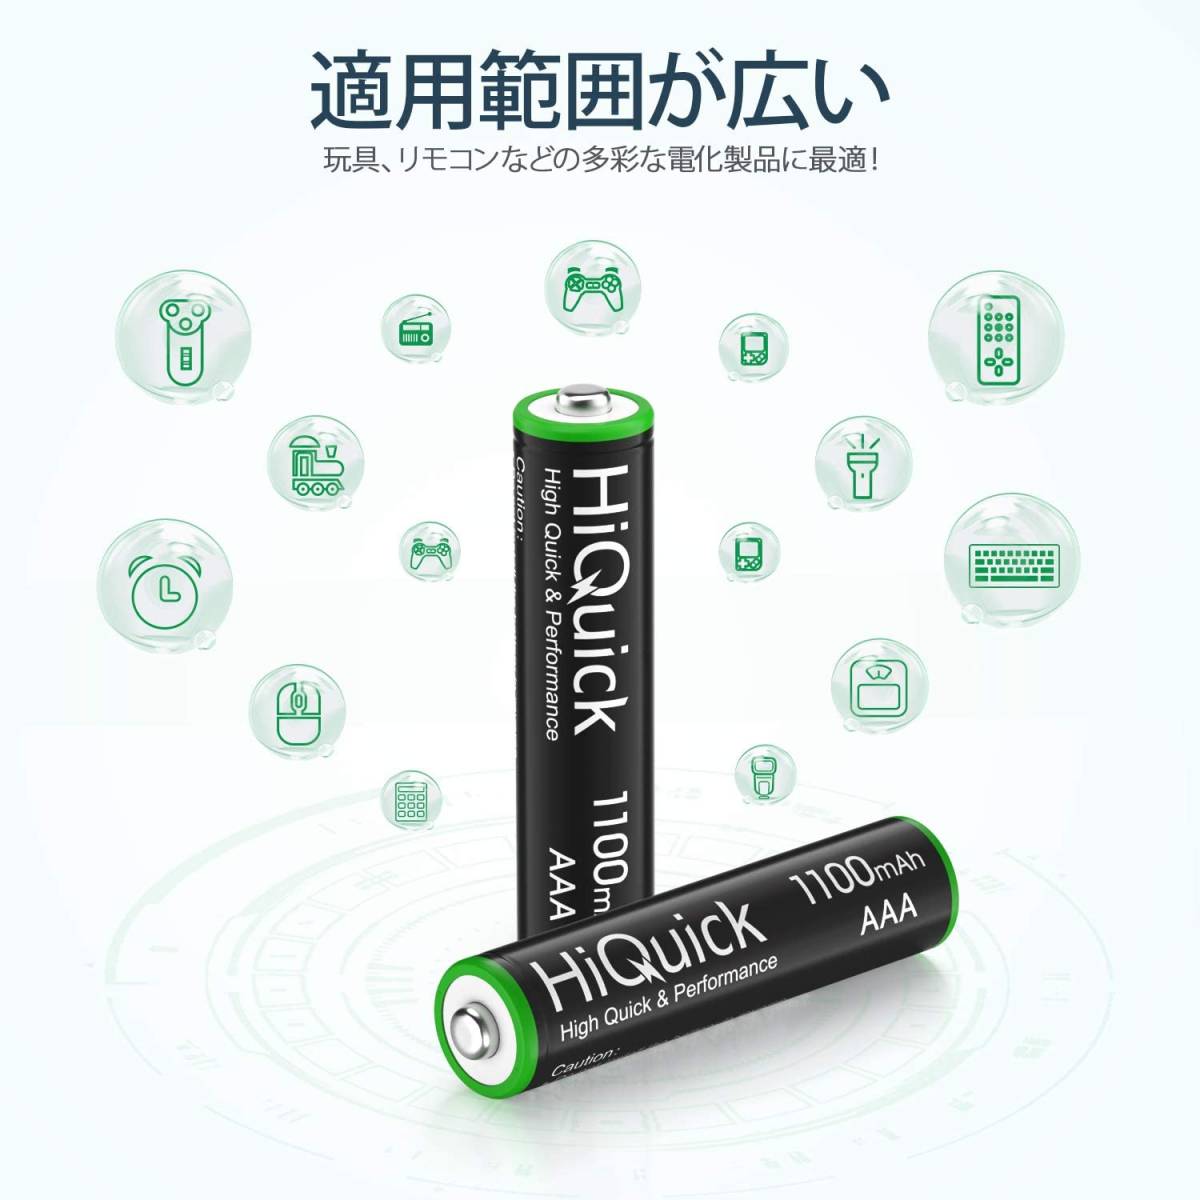 単4形 HiQuick 電池 単4 充電式 単4充電池 ニッケル水素電池1100mAh 8本入り ケース2個付き 約1200回使_画像4